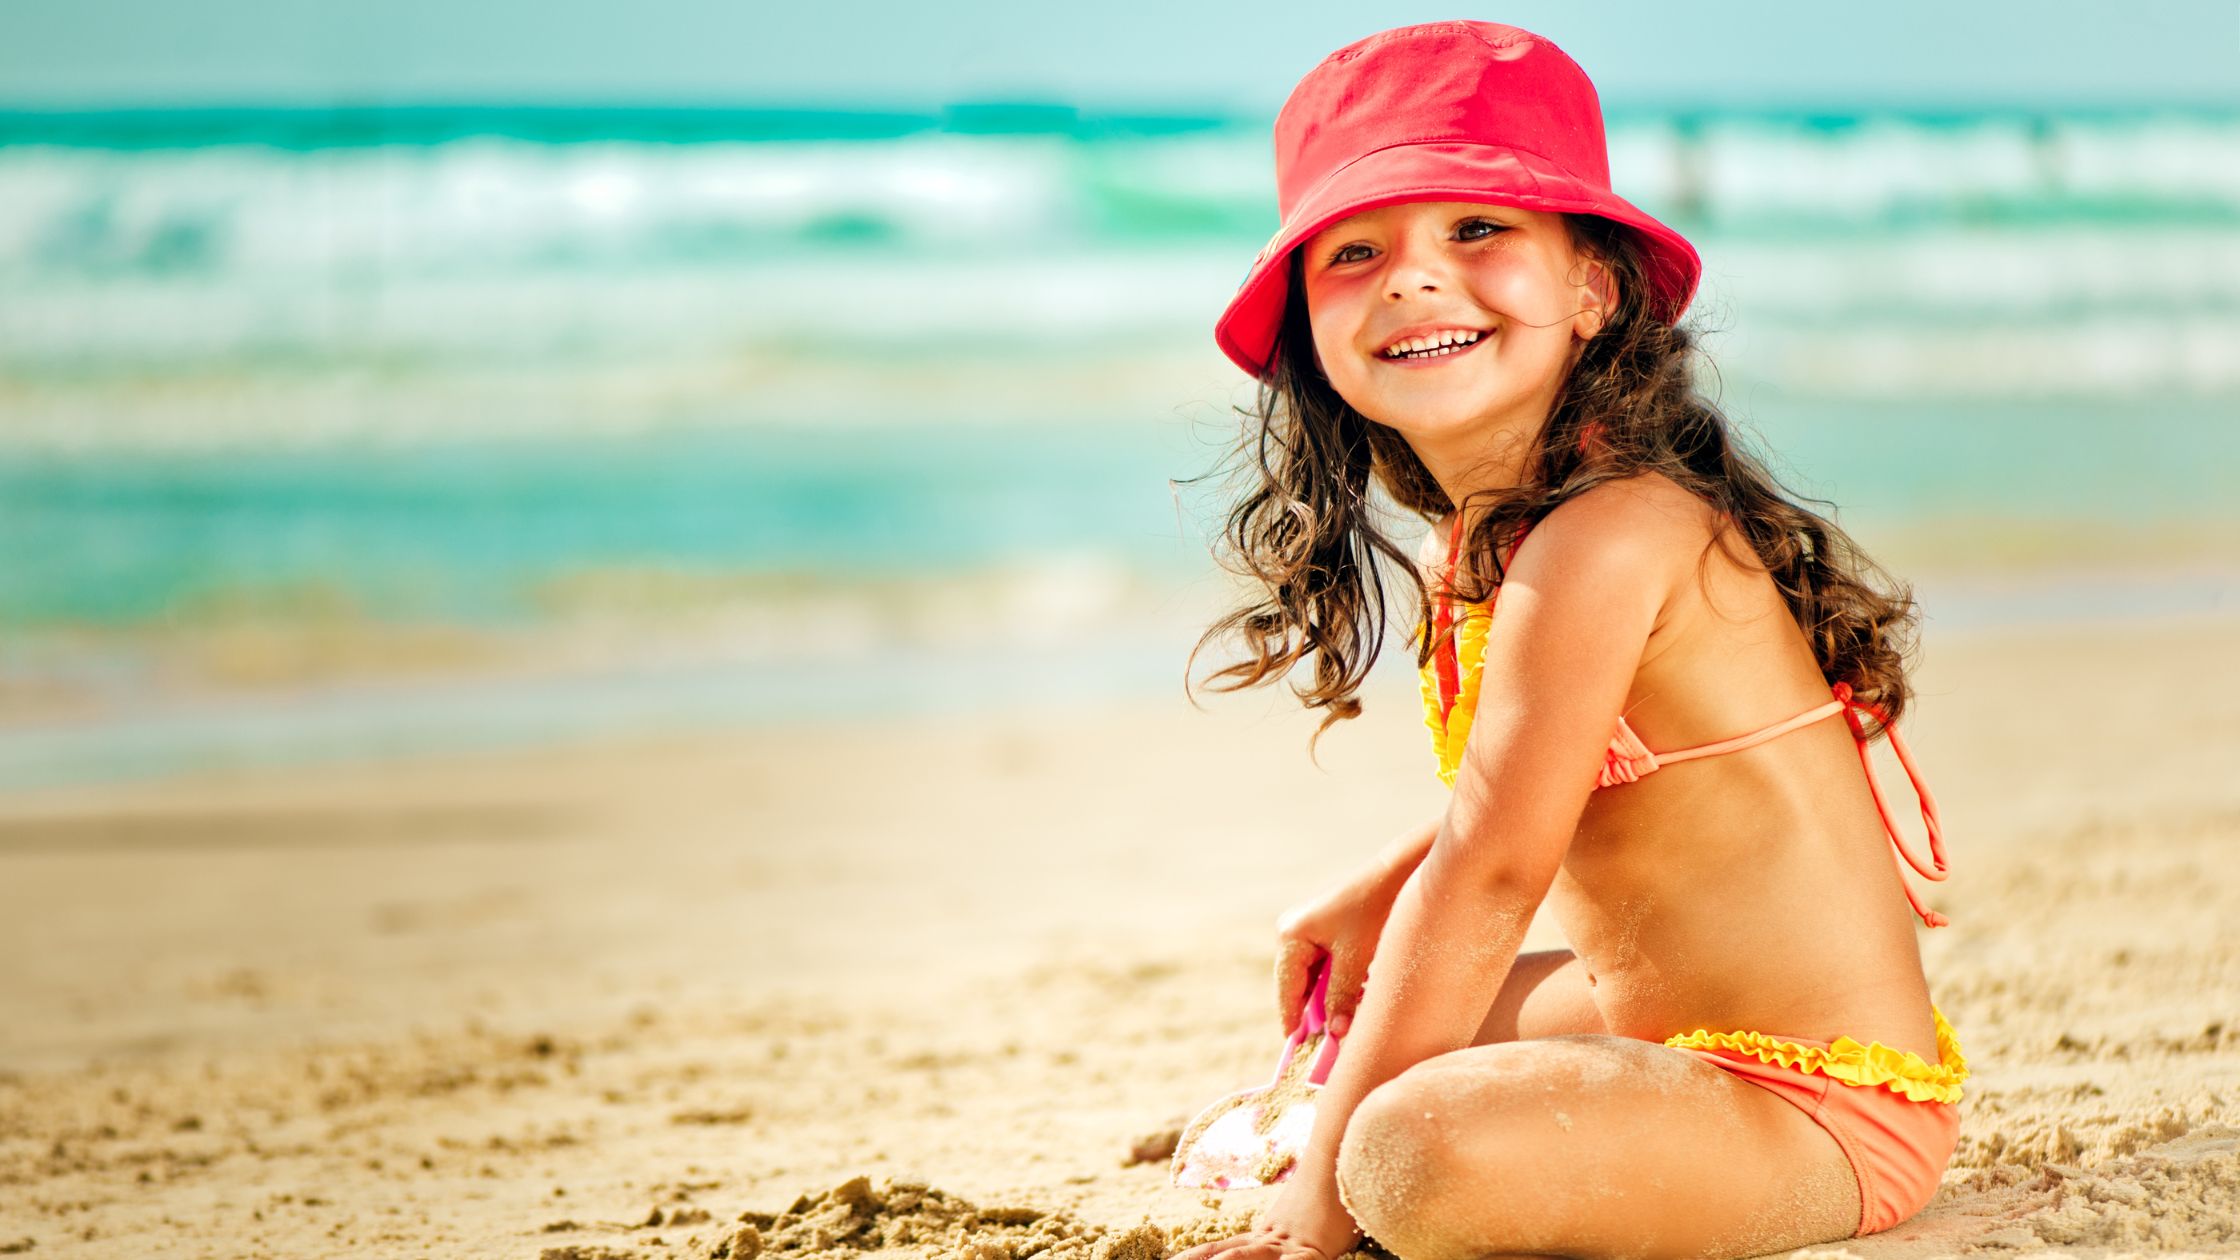 Criança de biquini e chapéu vermelho brincando na areia da praia